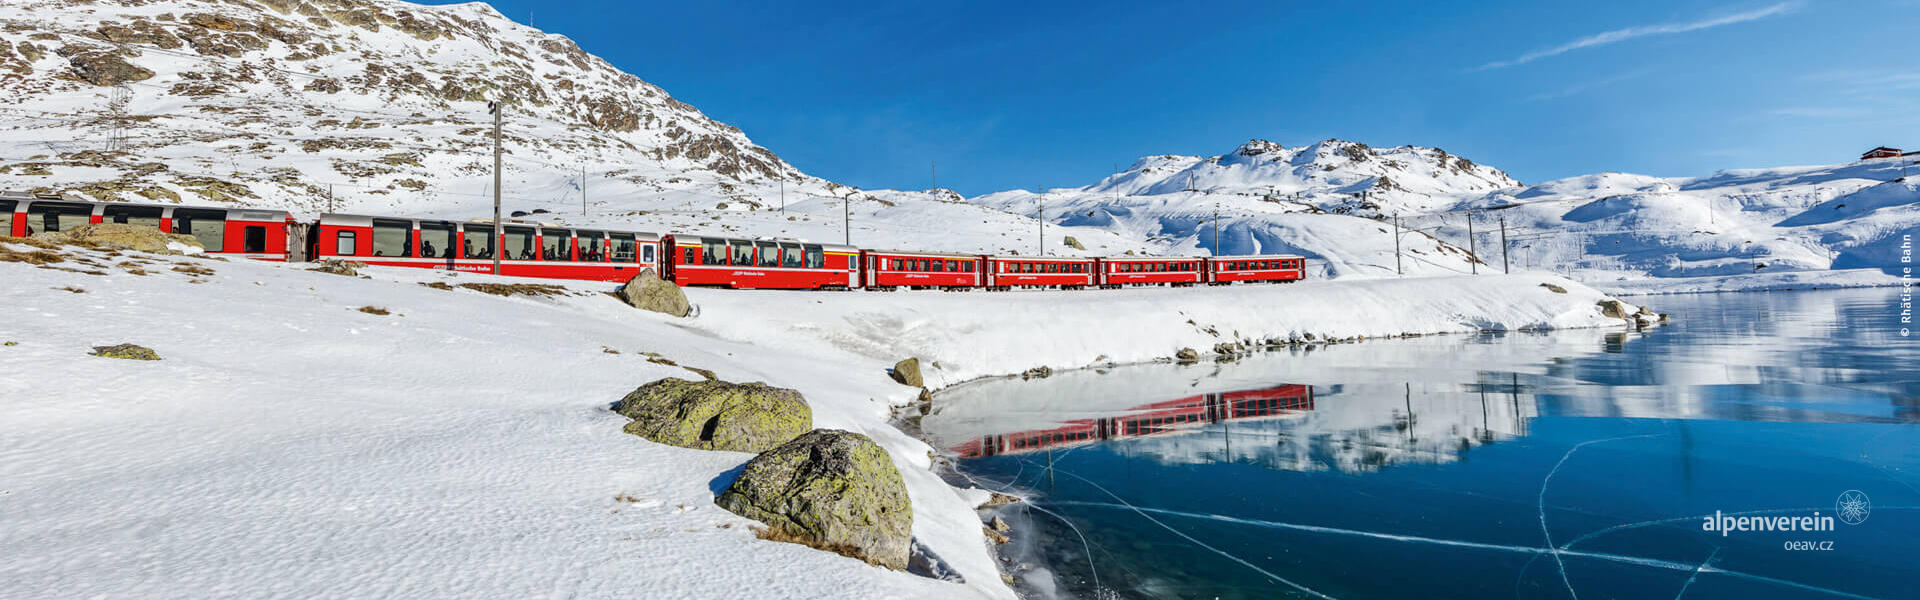 Alpenverein OEAV.CZ Grand Train Tour